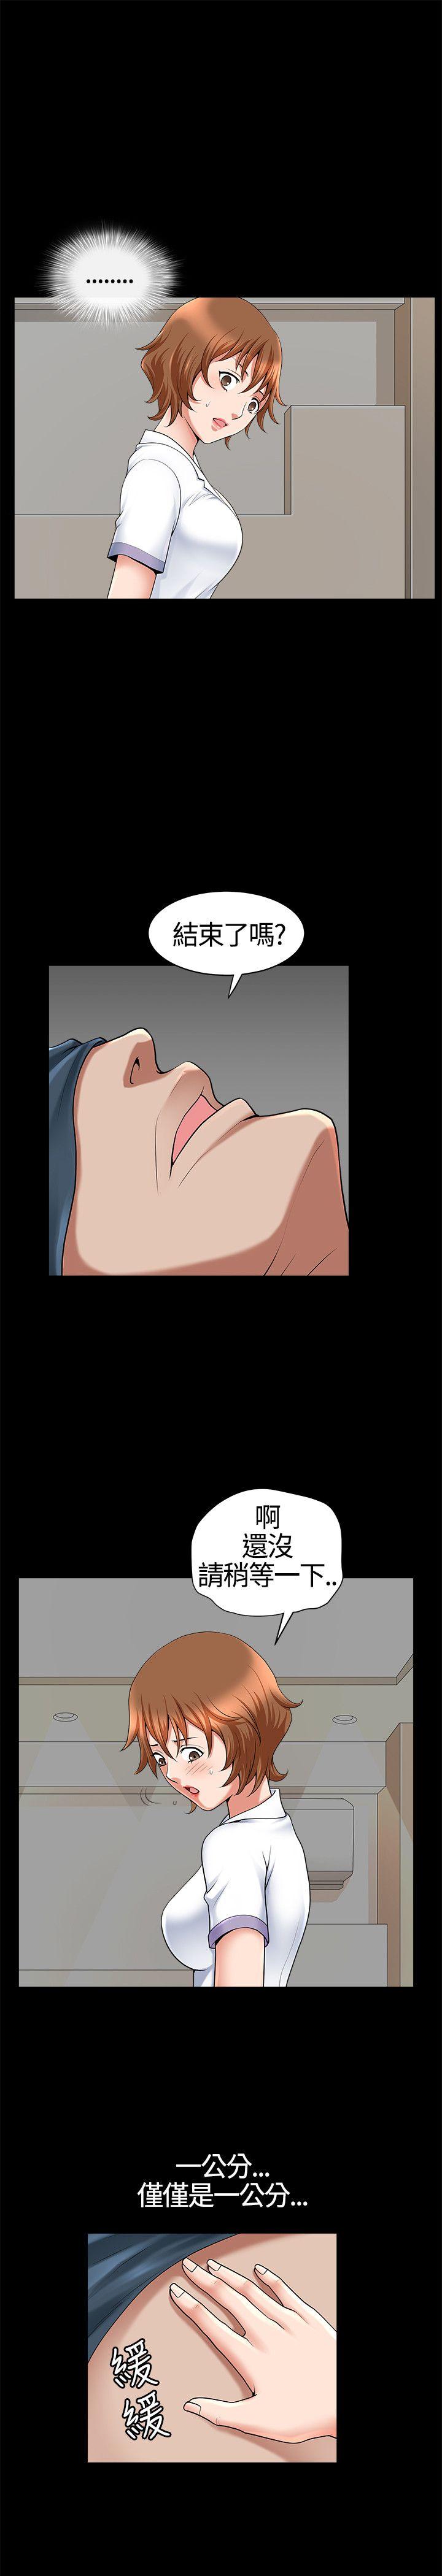 韩国污漫画 人妻性解放3:粗糙的手 第18话 20